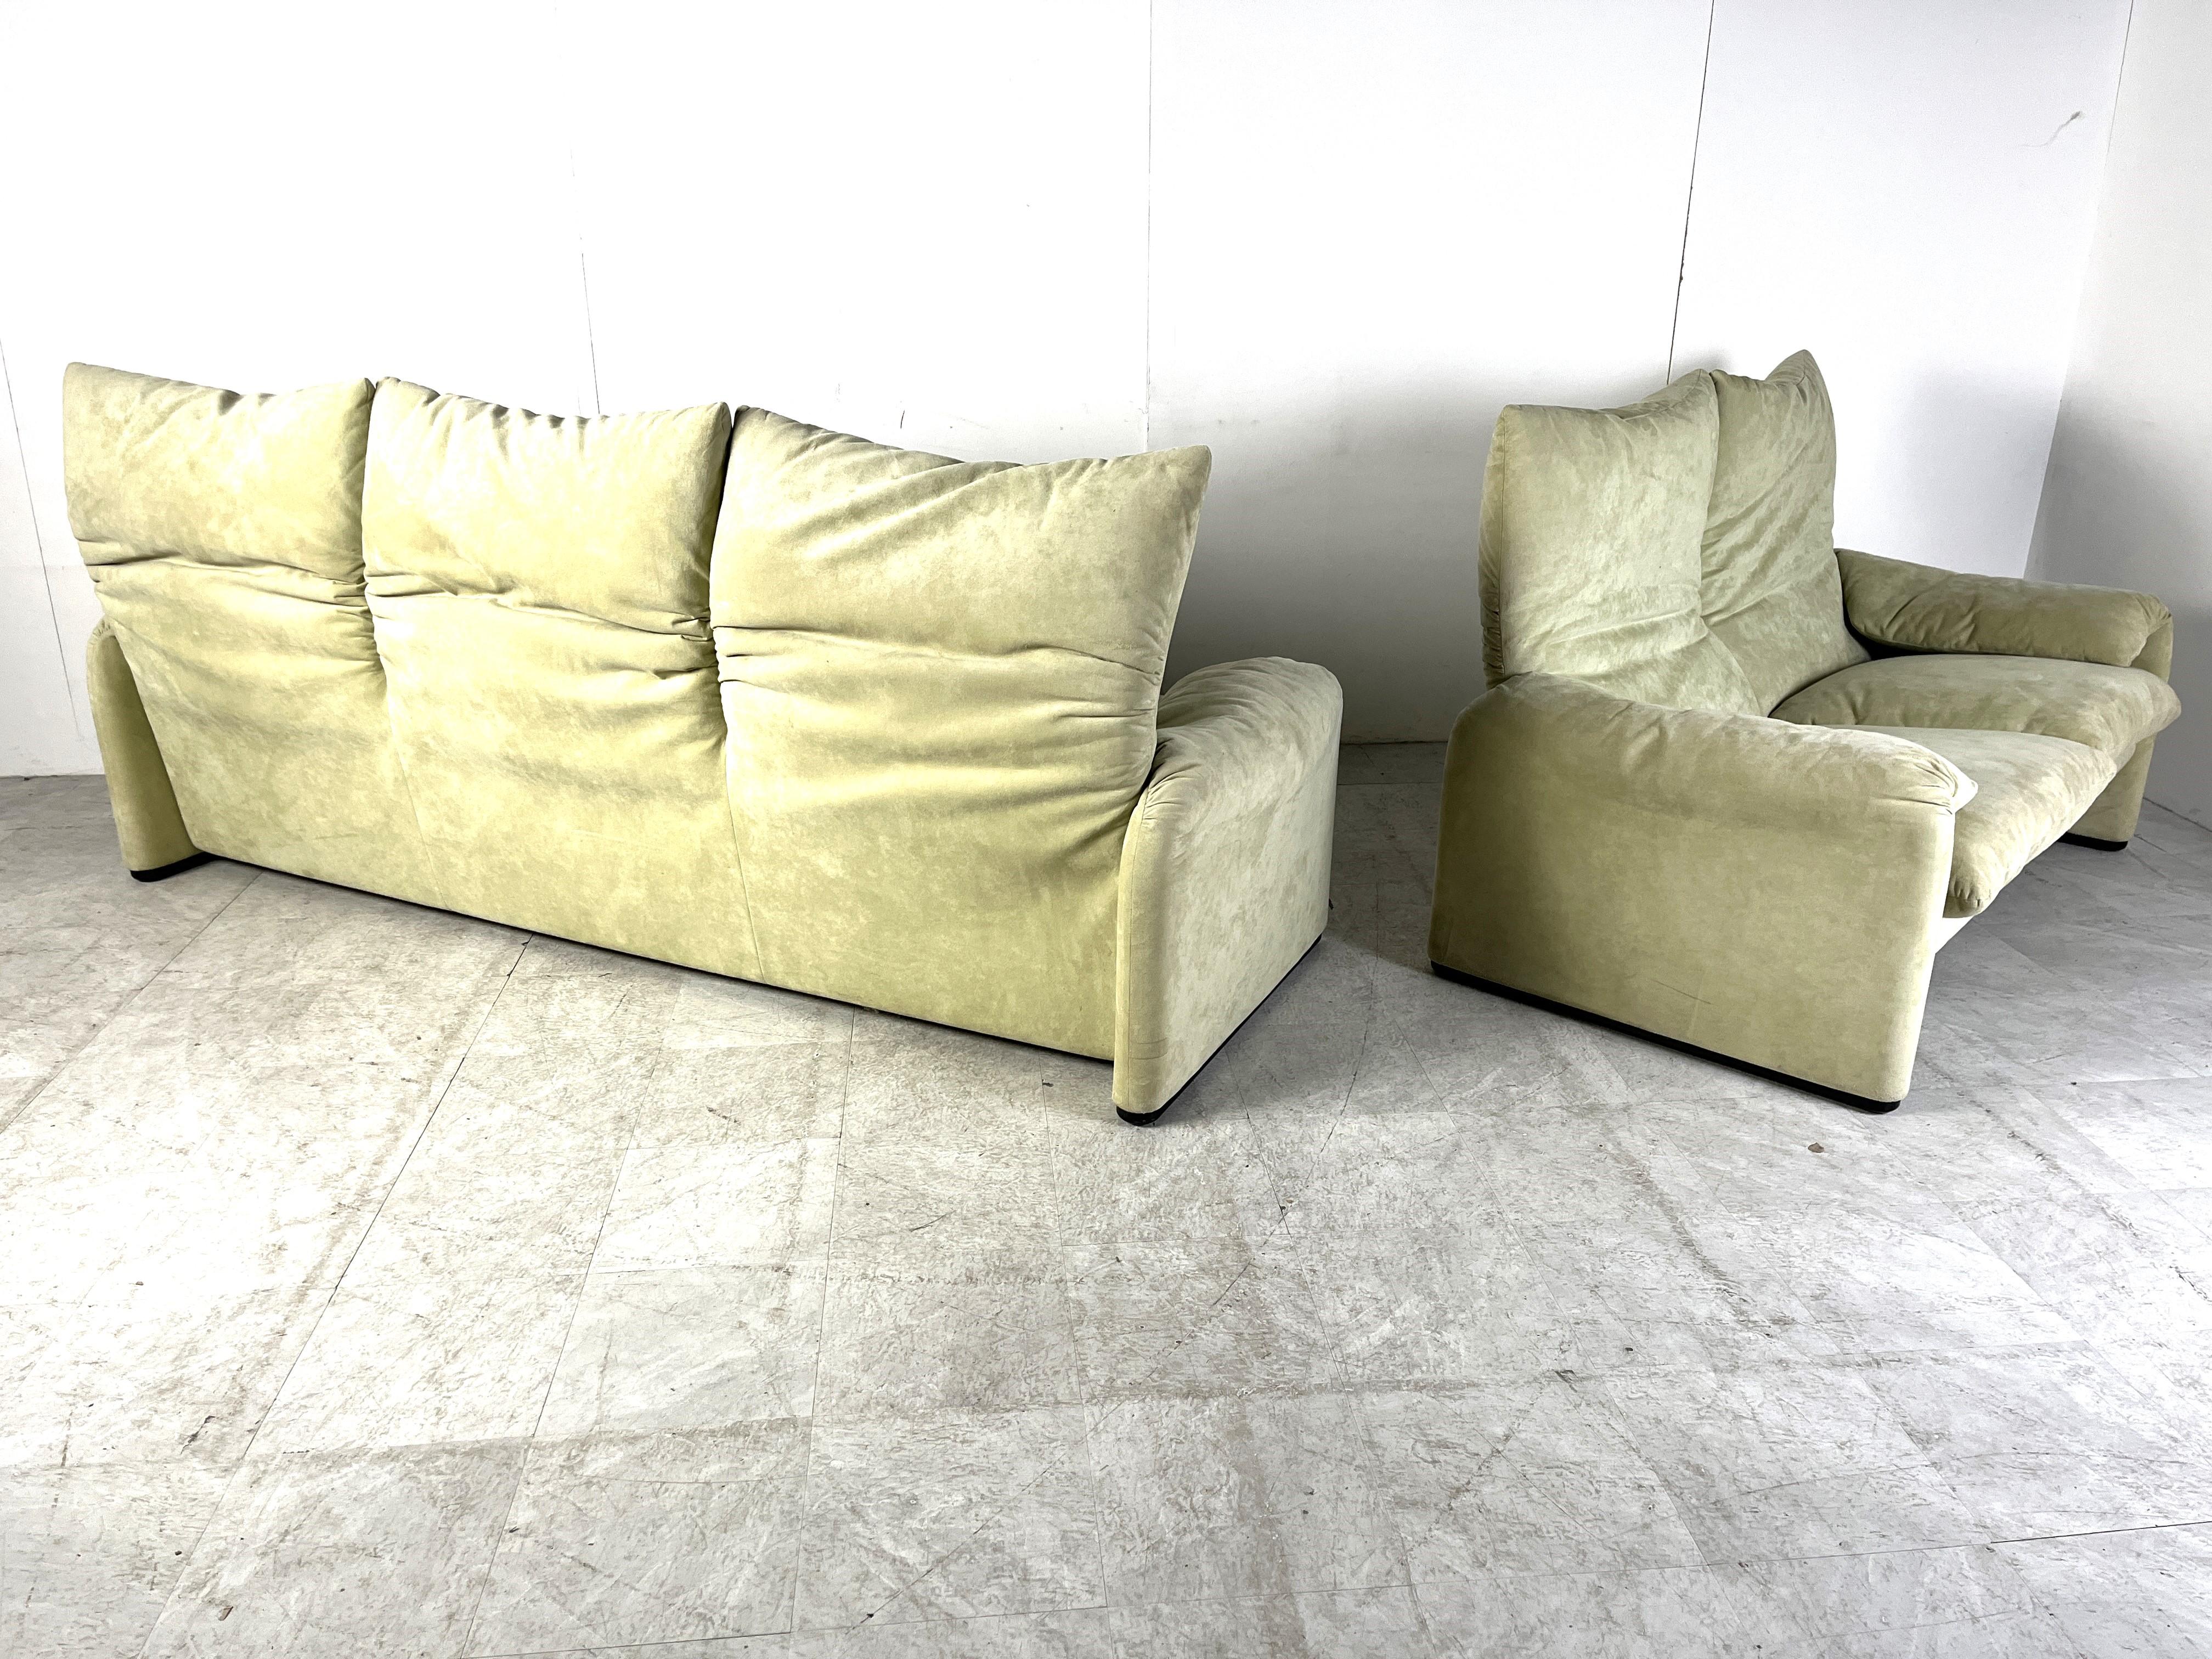 Maralunga sofa set by Vico Magistretti for Cassina 3